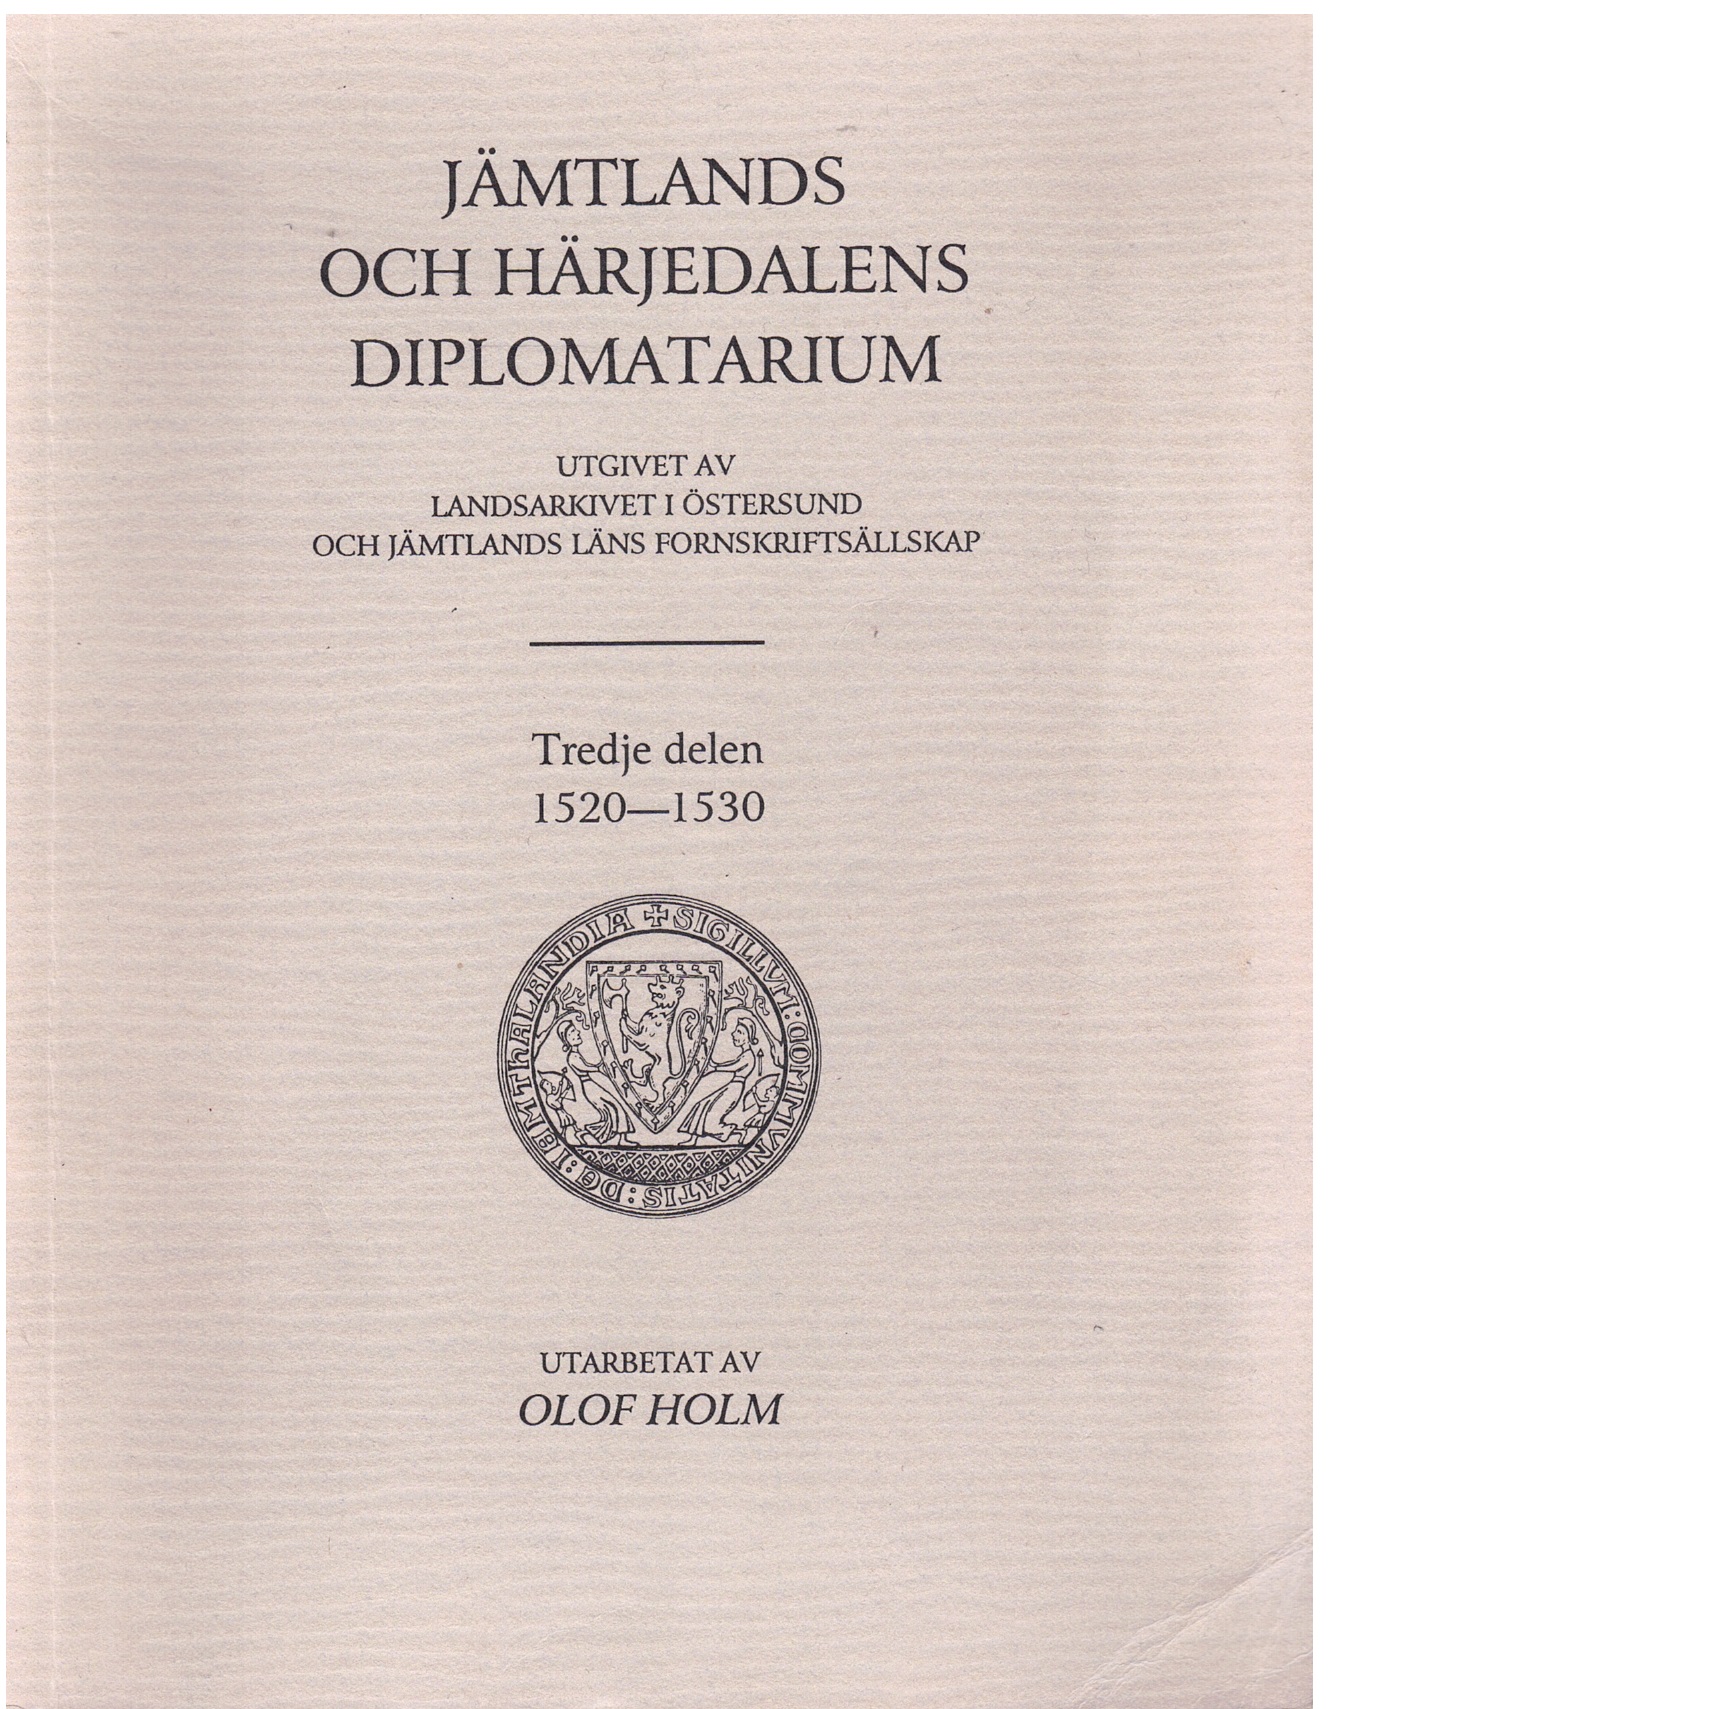 Jämtlands och Härjedalens diplomatarium D. 3 1520-1530 / utarbetad av Olof Holm. - Red.